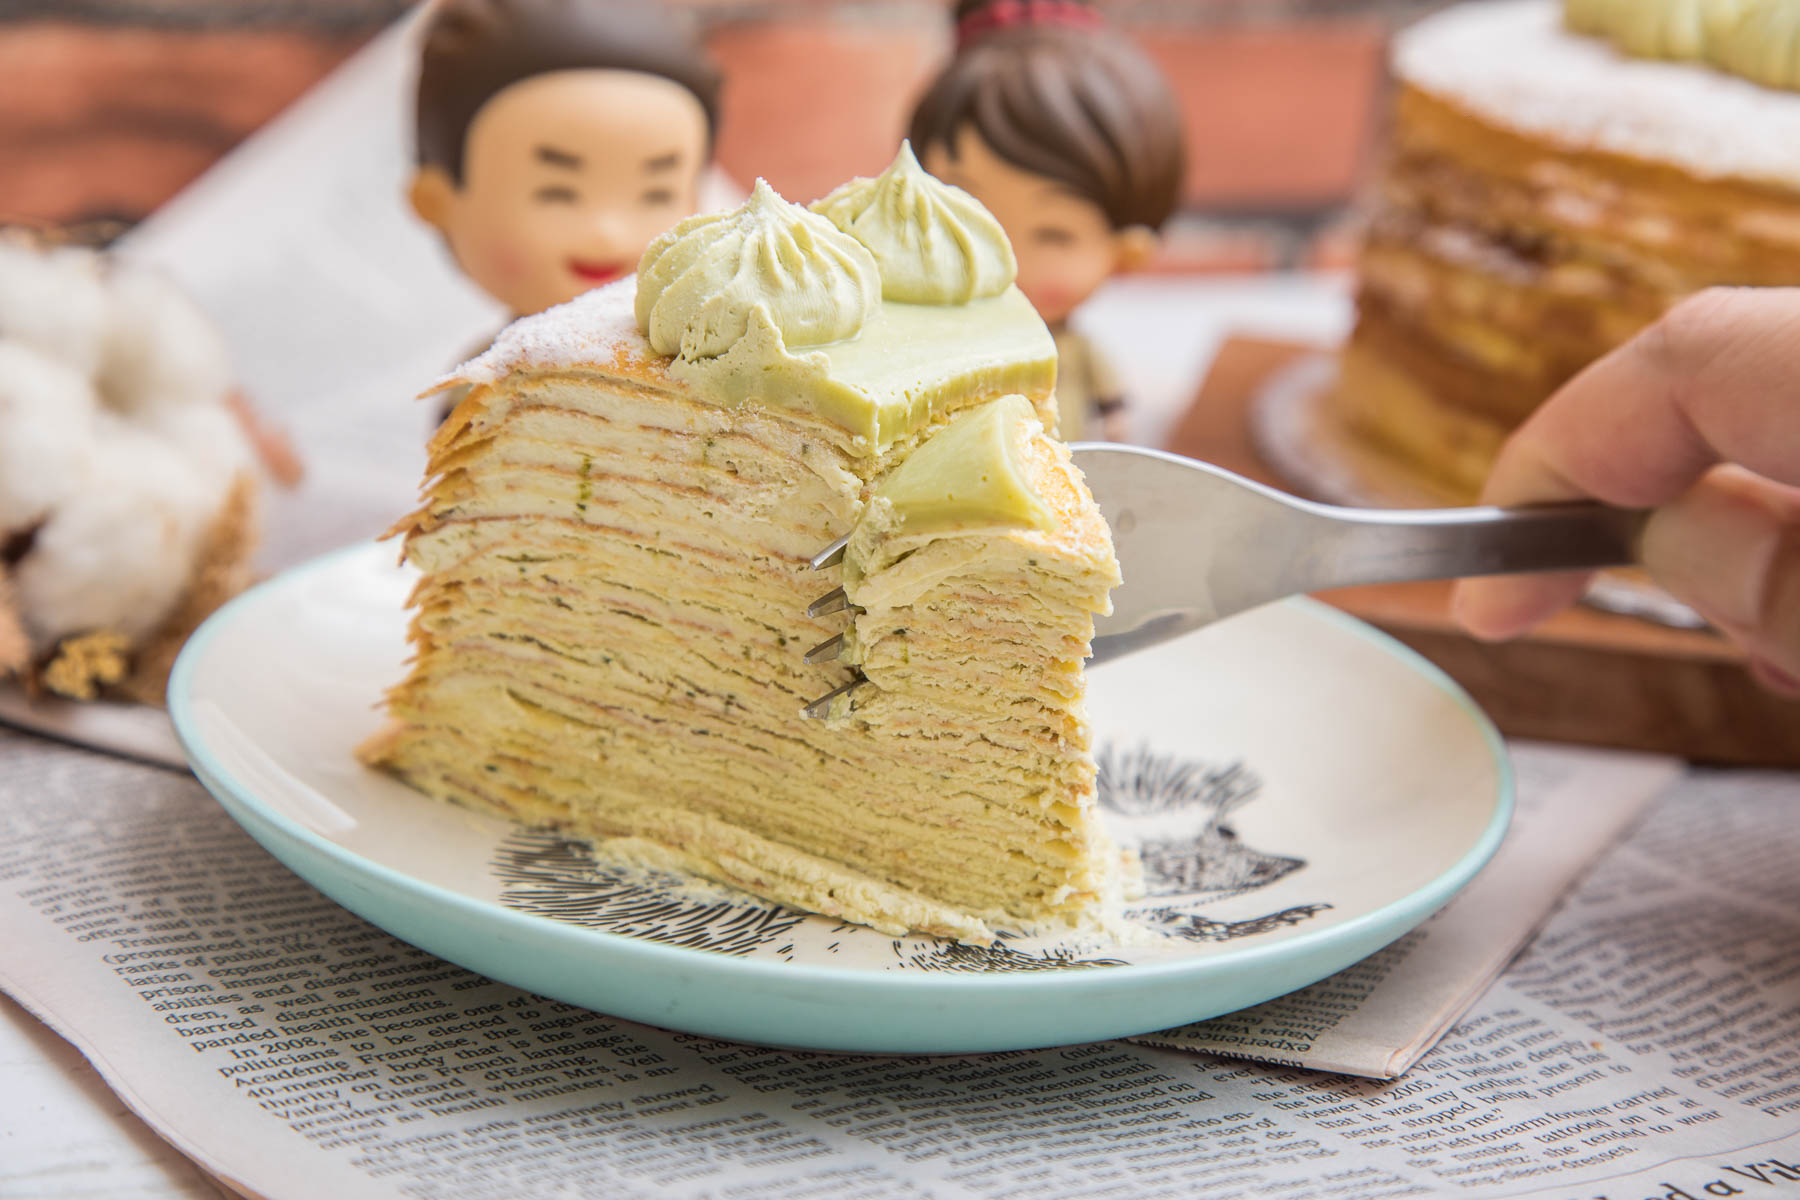 台北母親節蛋糕,台北生日蛋糕,台北千層蛋糕推薦,宅配千層蛋糕,台北蛋糕,台北千層蛋糕